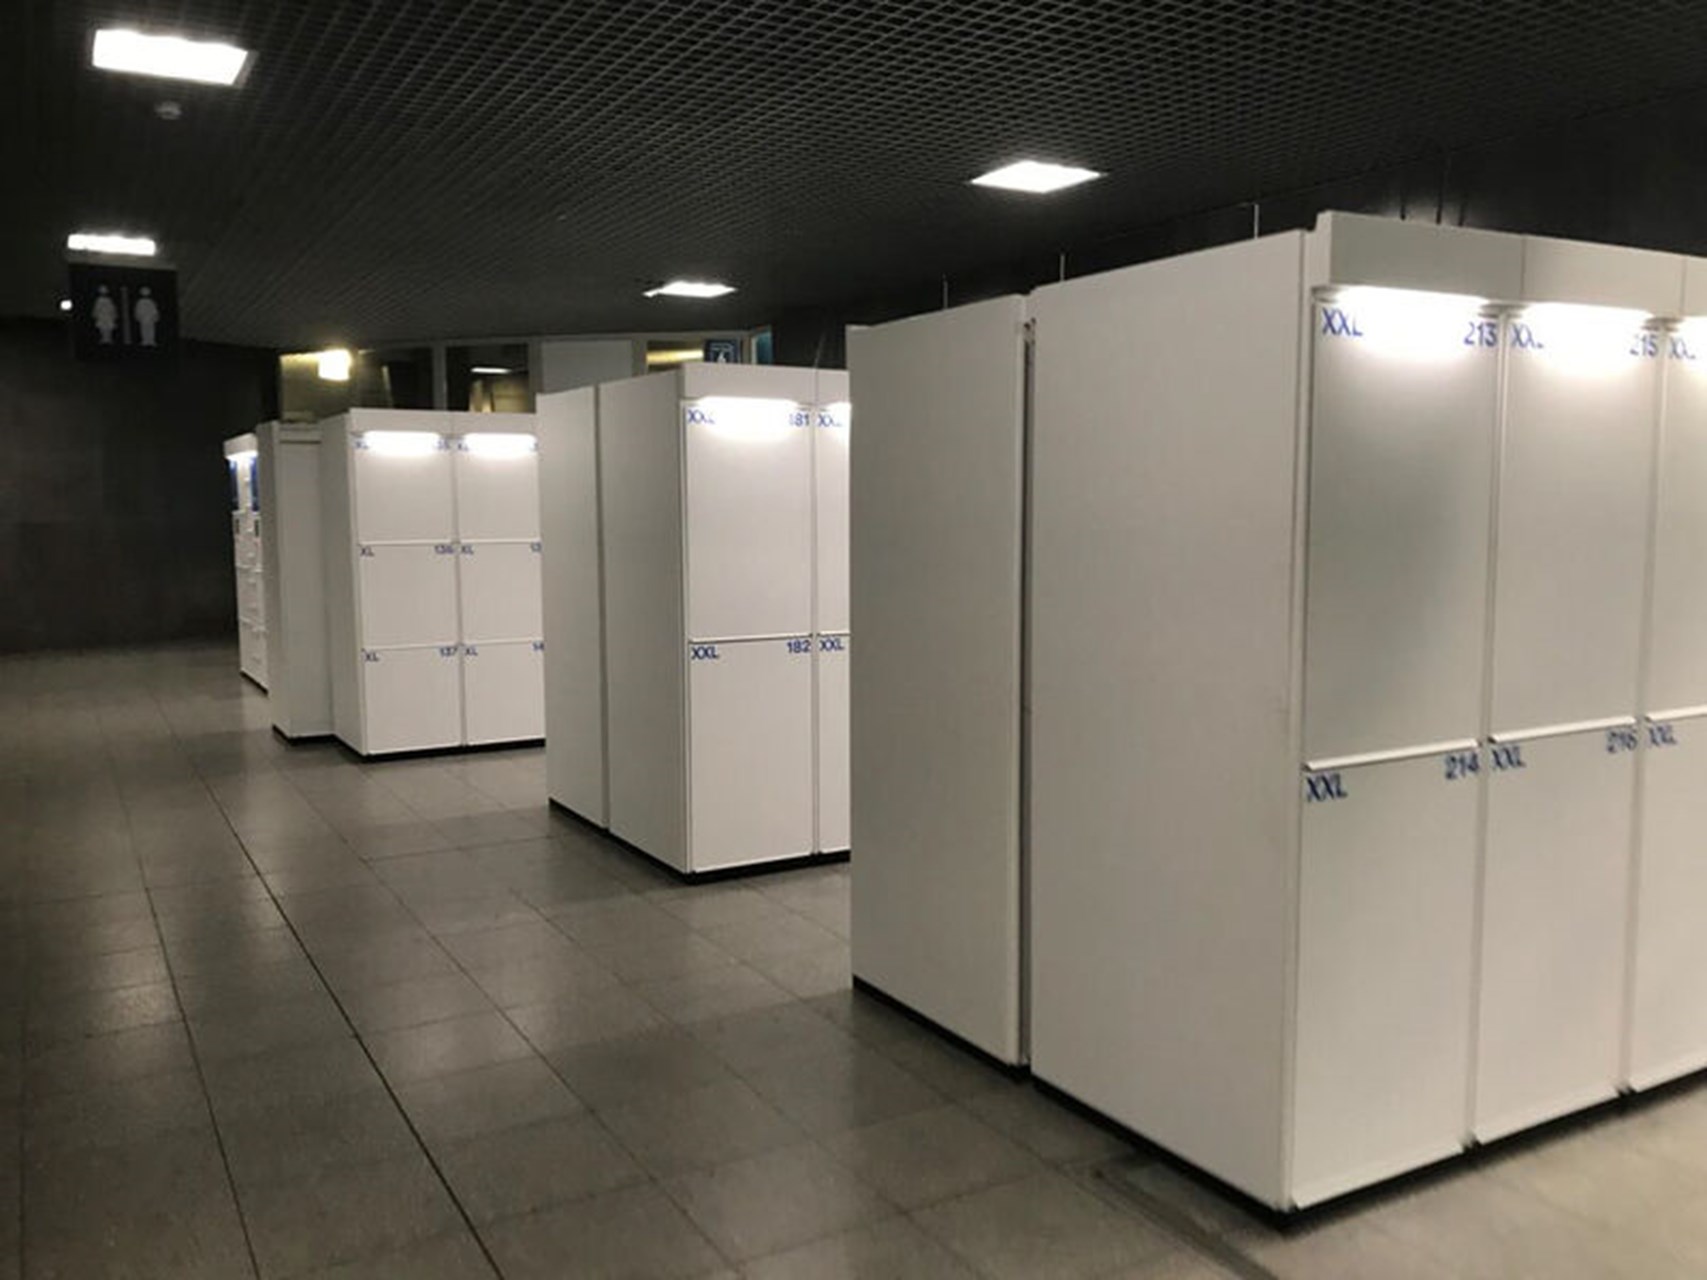 Primat automatic luggage lockers in Belgium